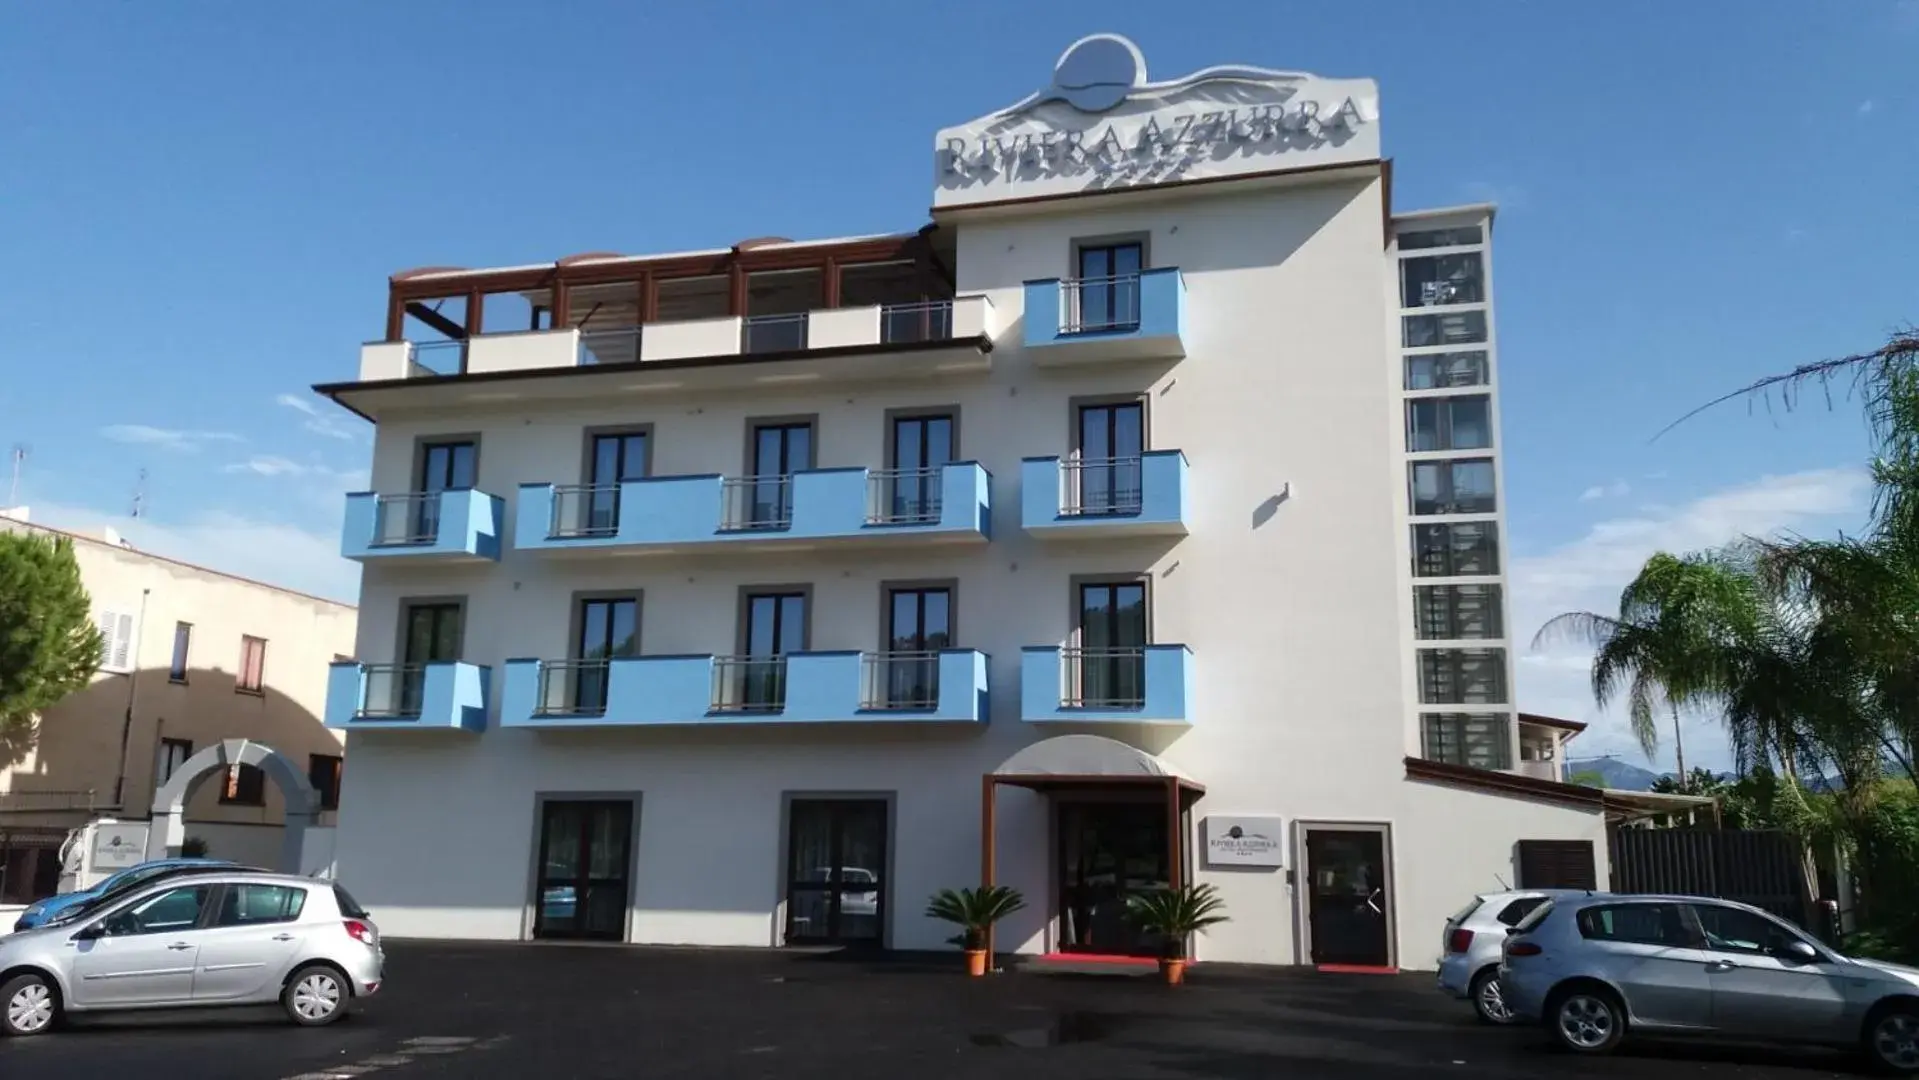 Facade/entrance, Property Building in Hotel Riviera Azzurra